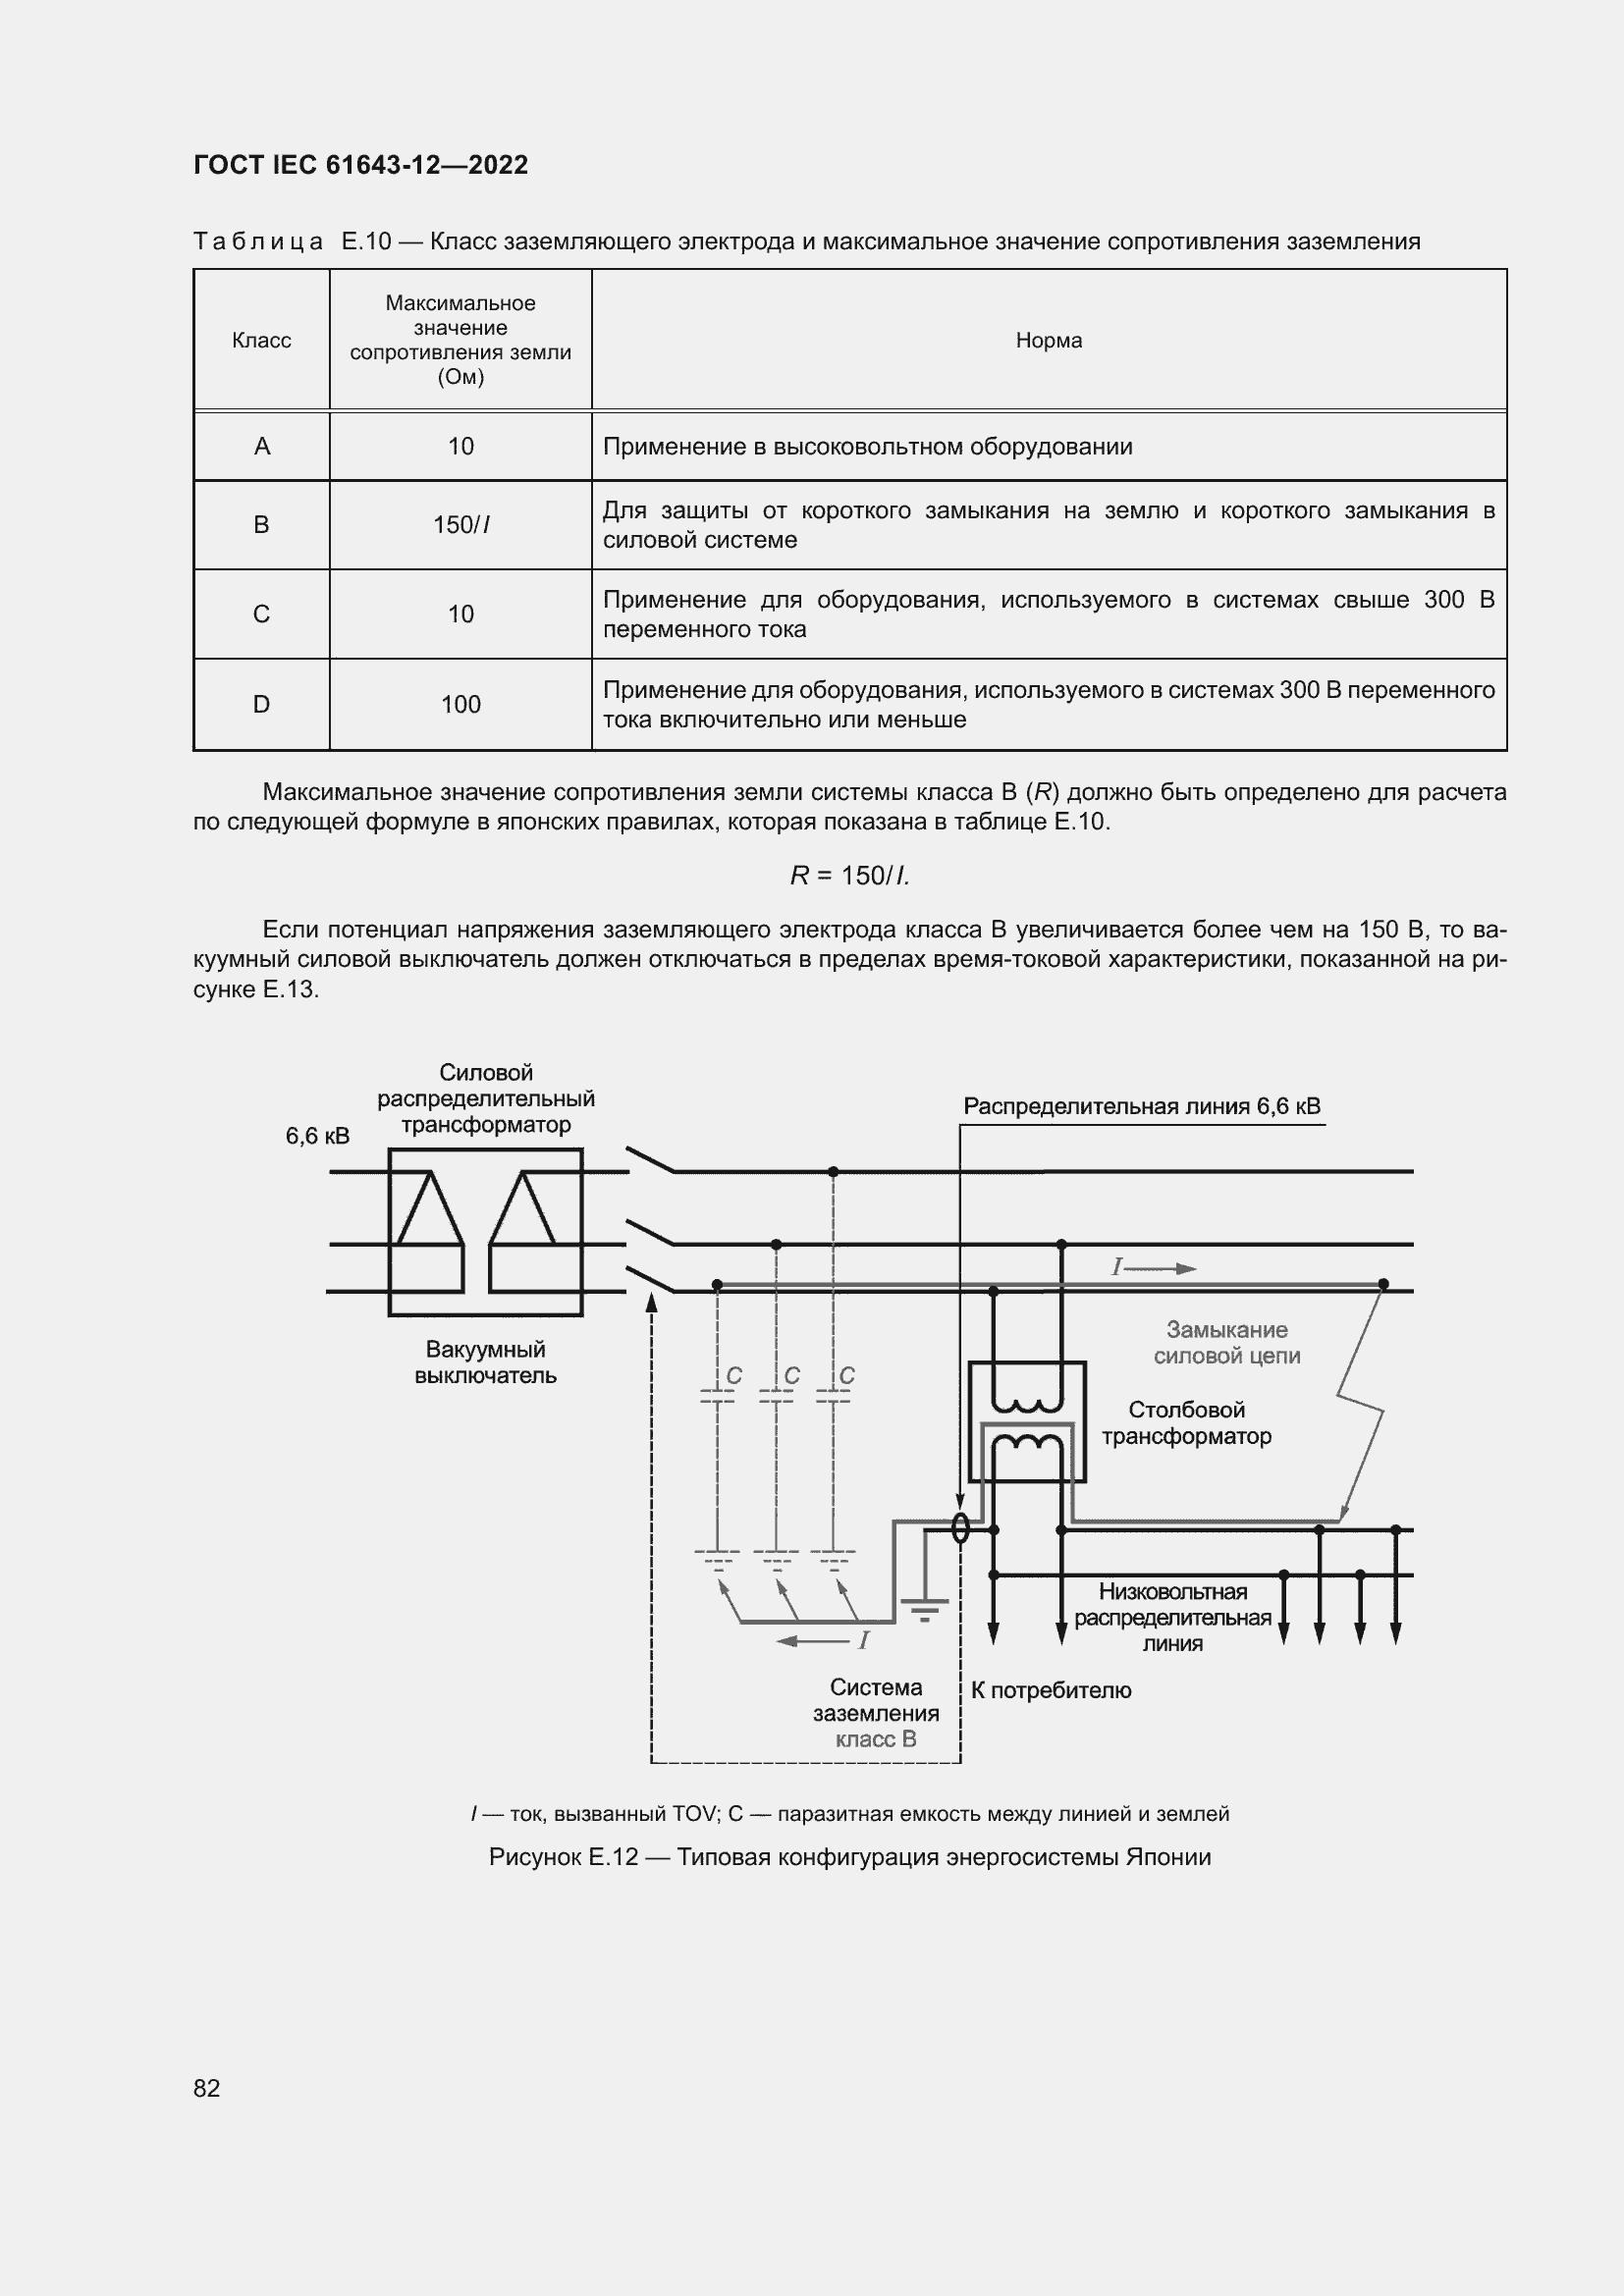  IEC 61643-12-2022.  88